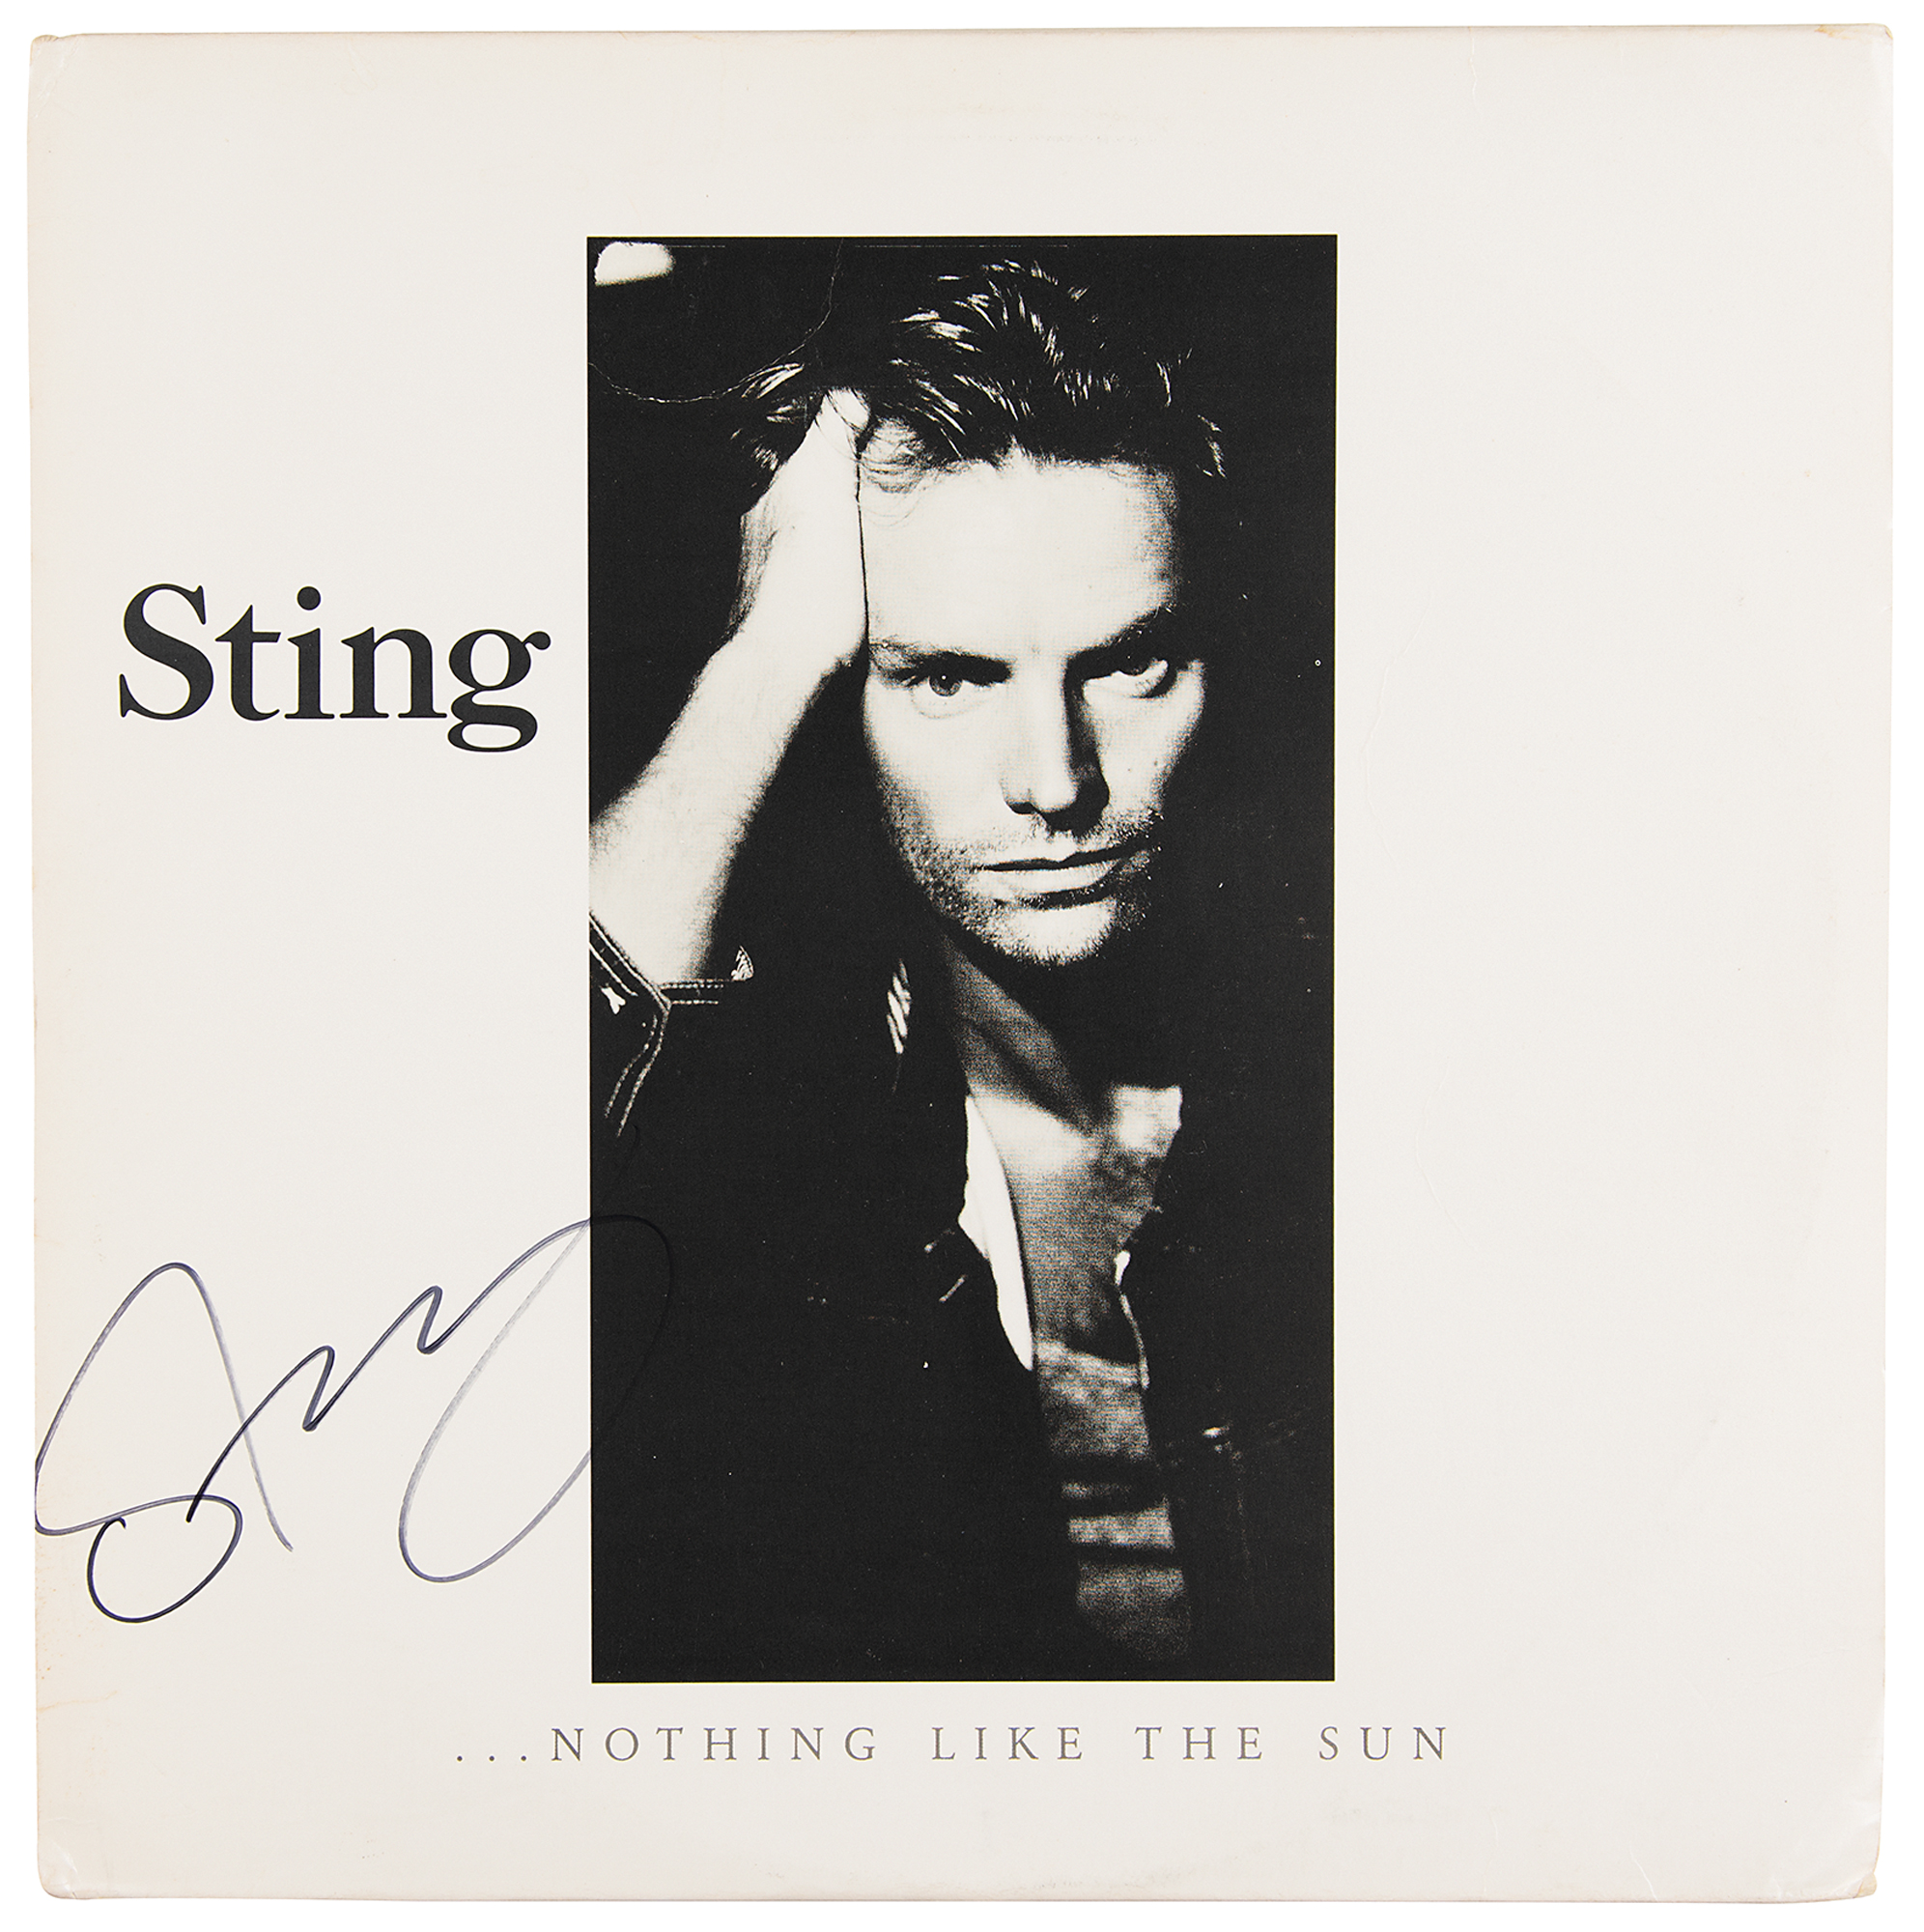 Lot #2328 Sting Signed Album